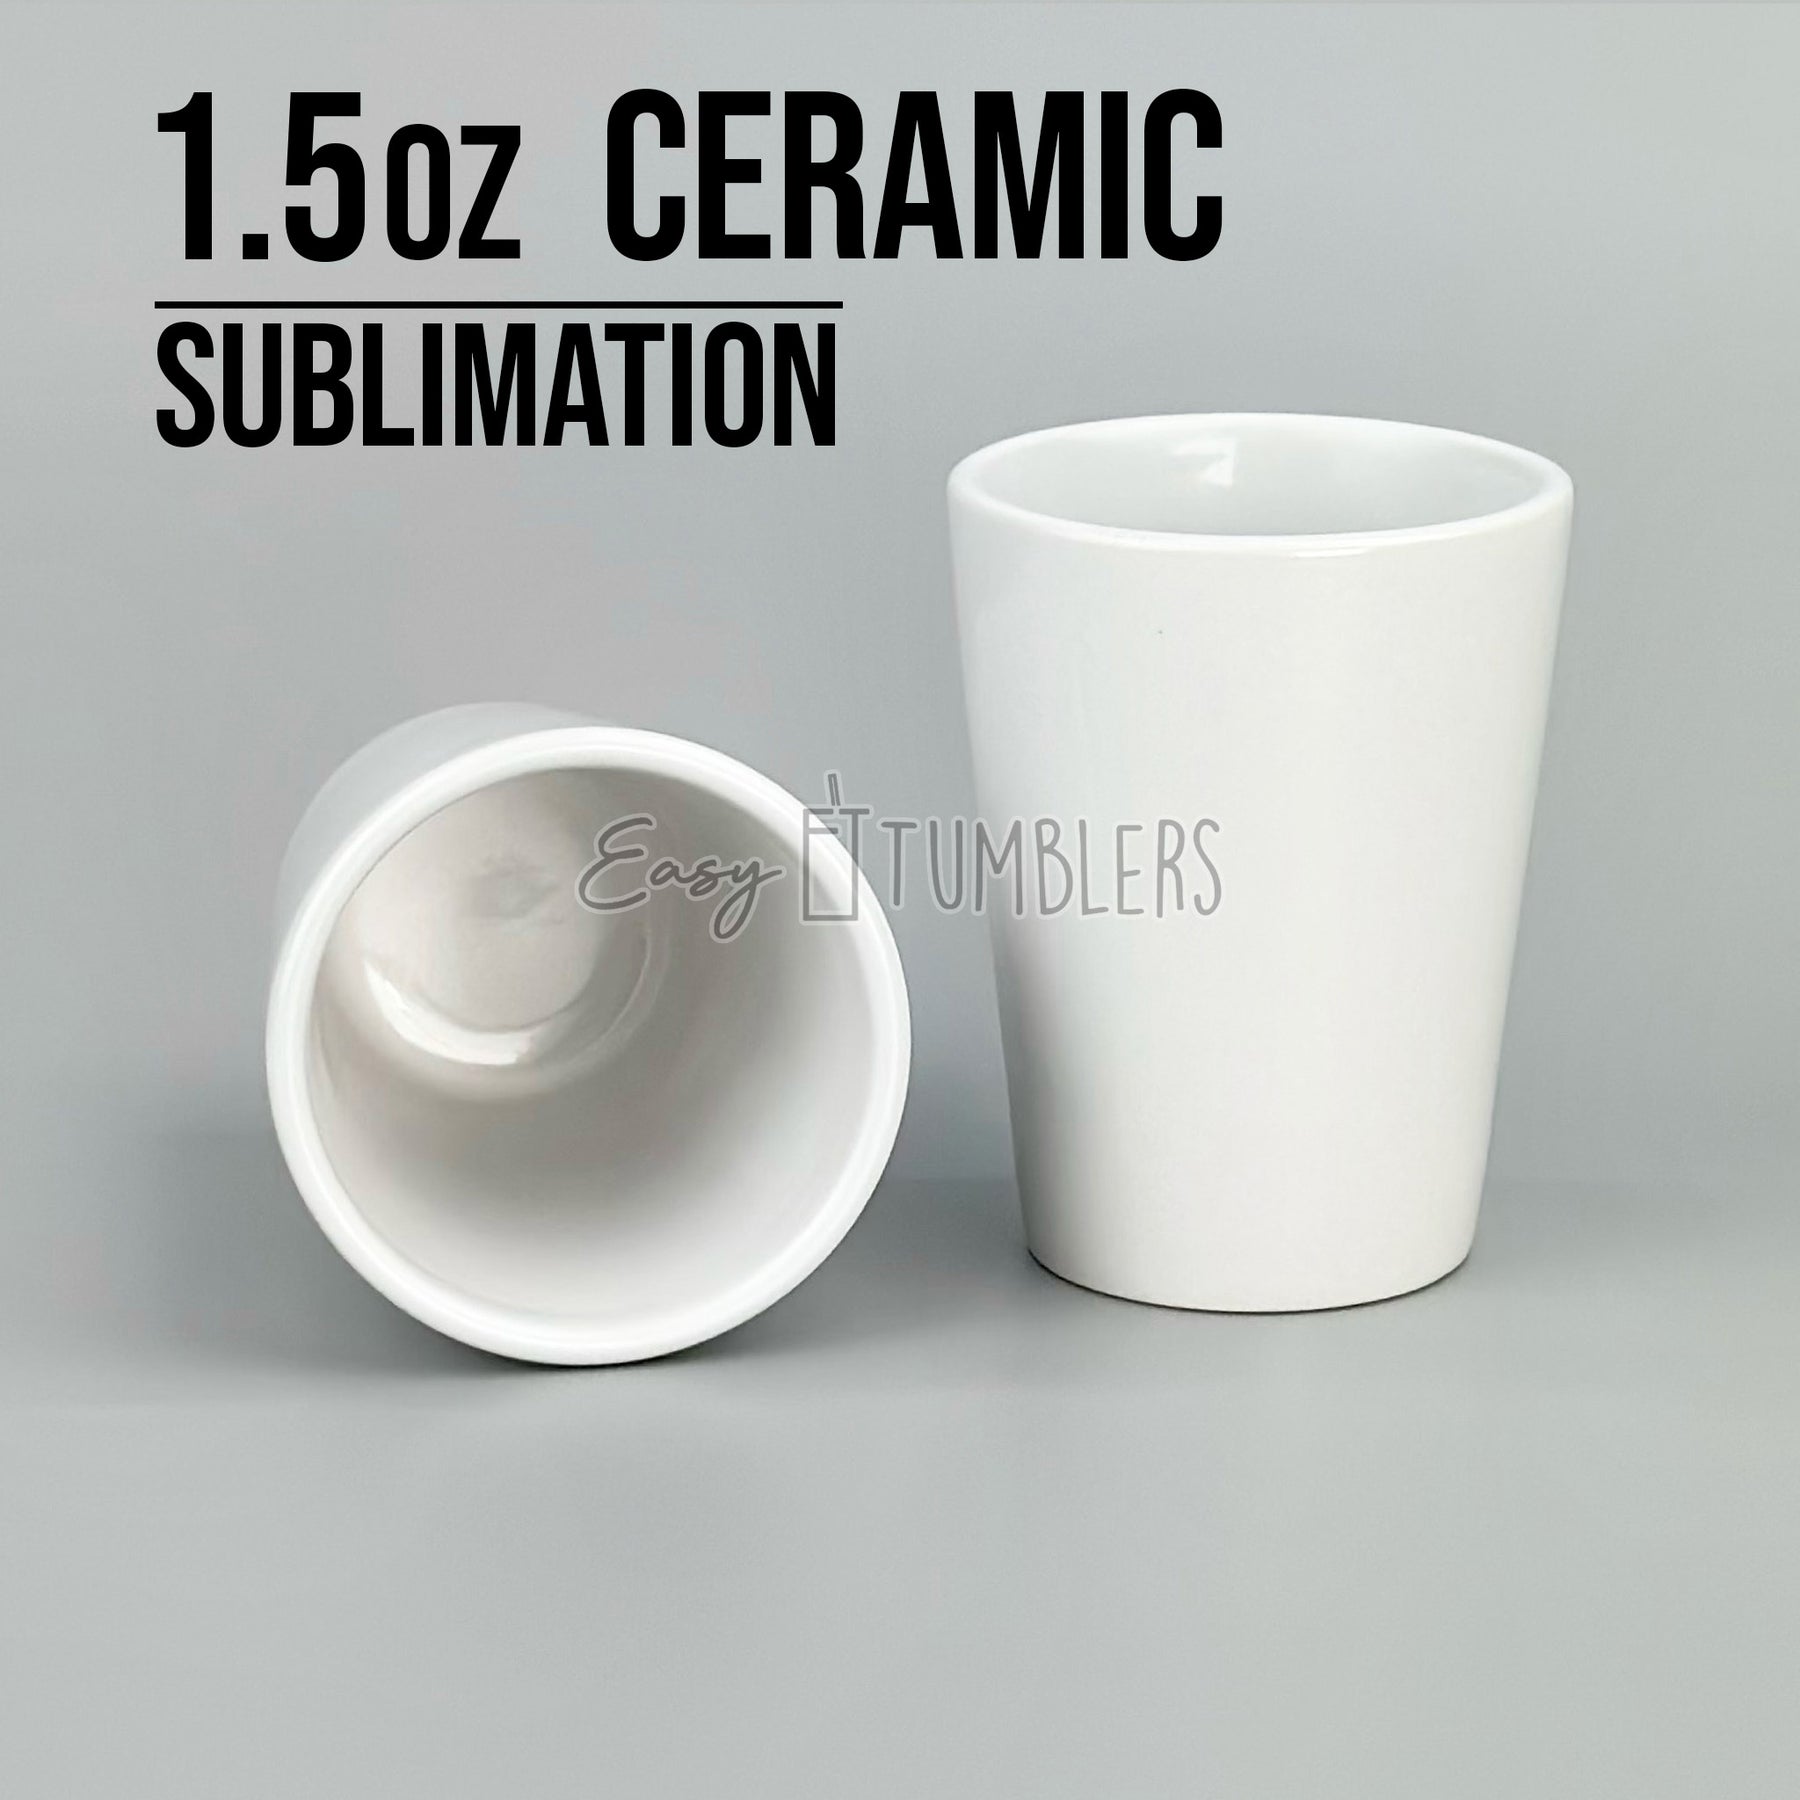 How To Sublimate a 1.5oz Ceramic Shot Glass